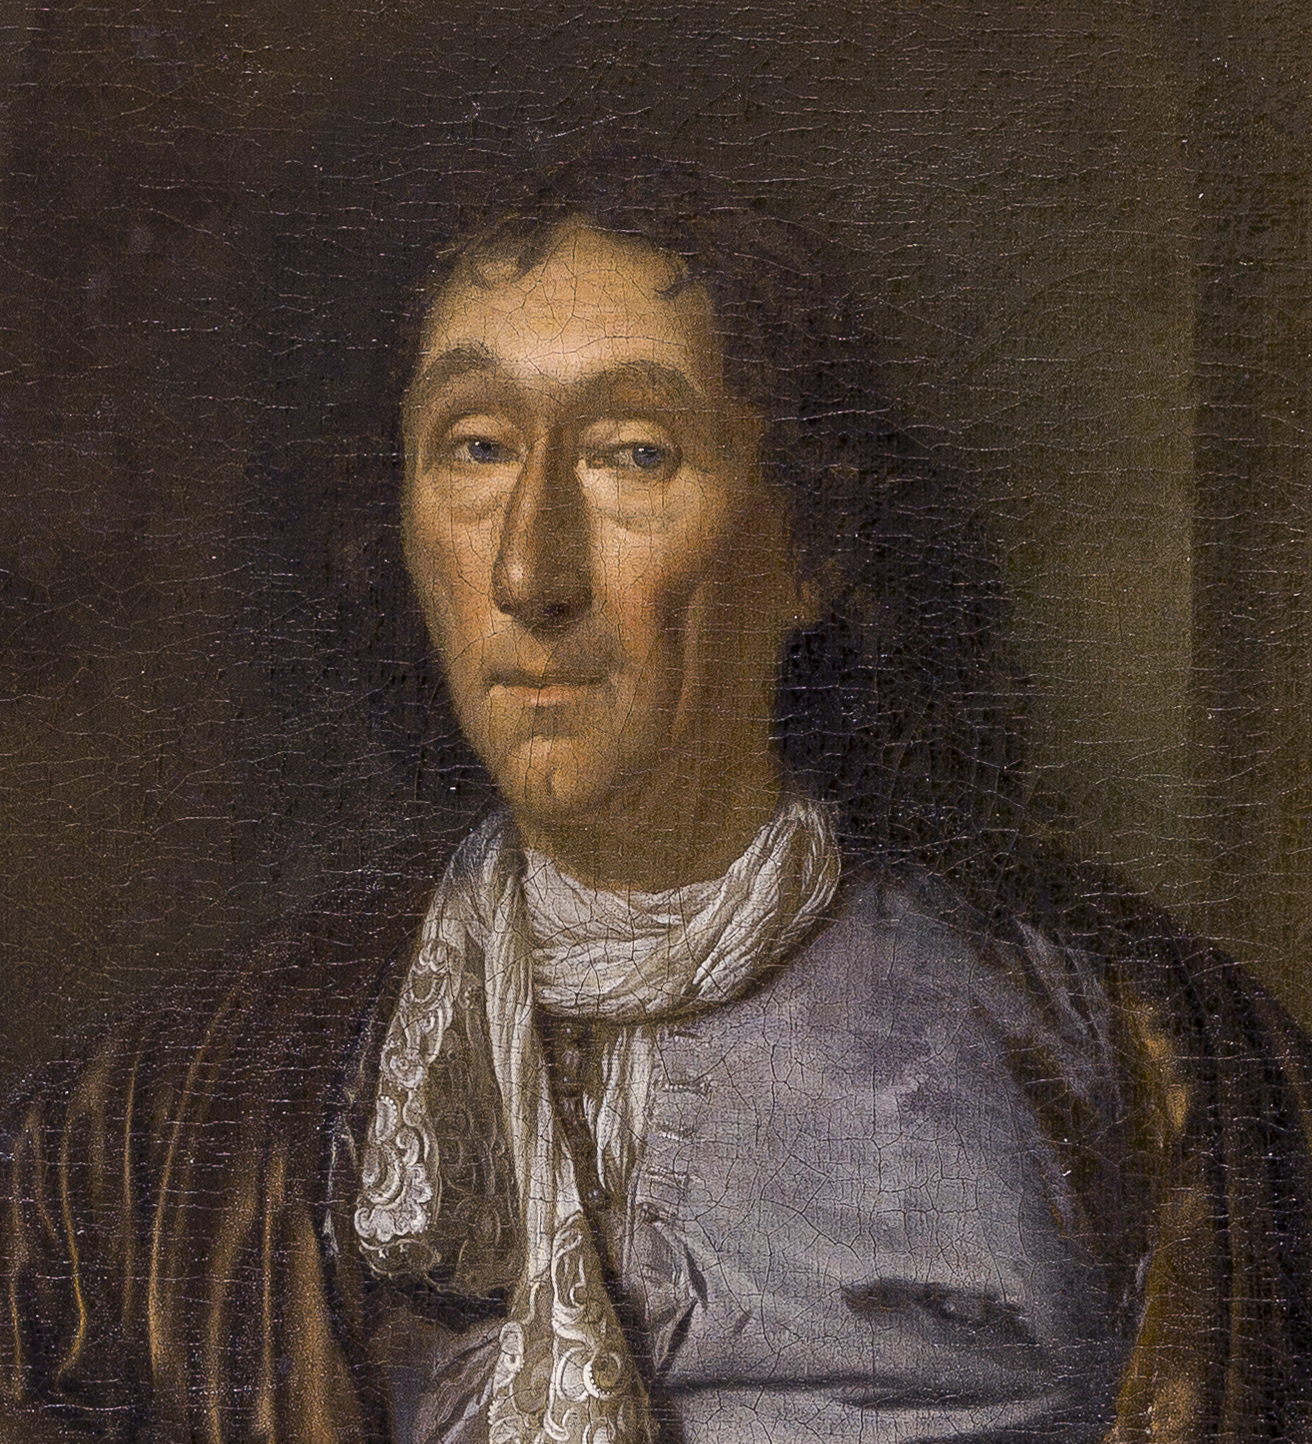 Pieter van der Werff